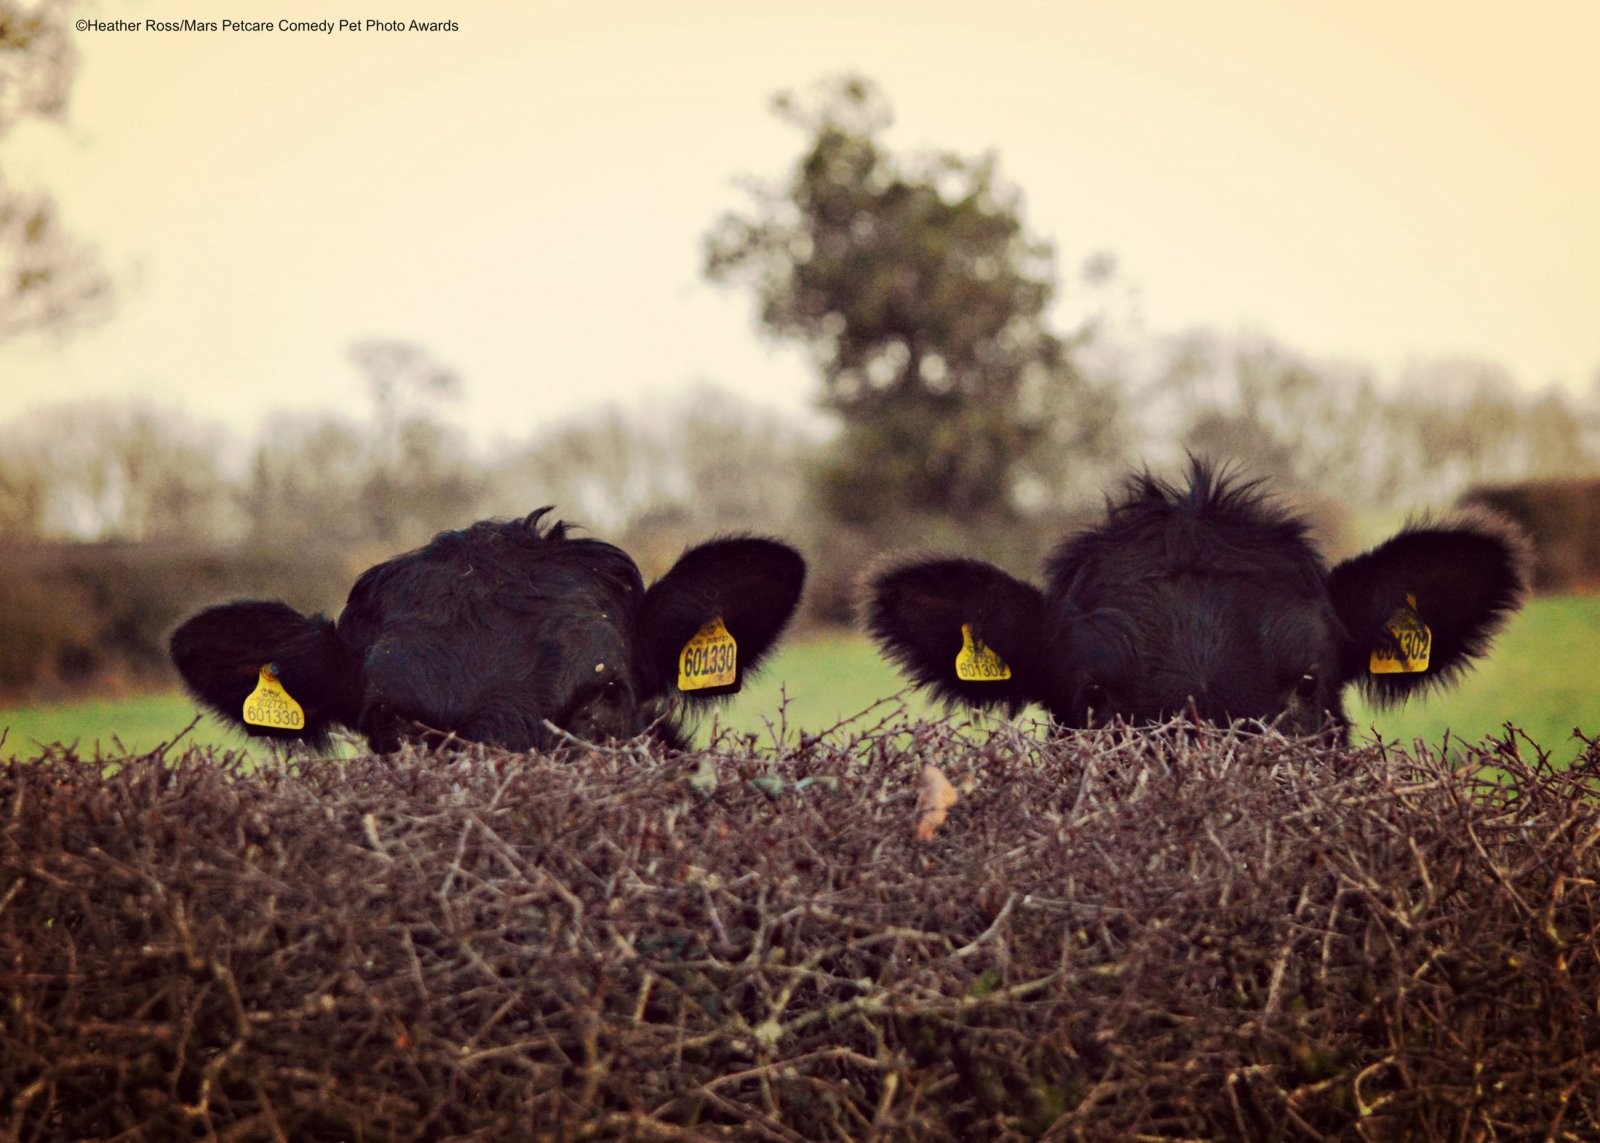 Скрытные коровы. Фотограф Хизер Росс